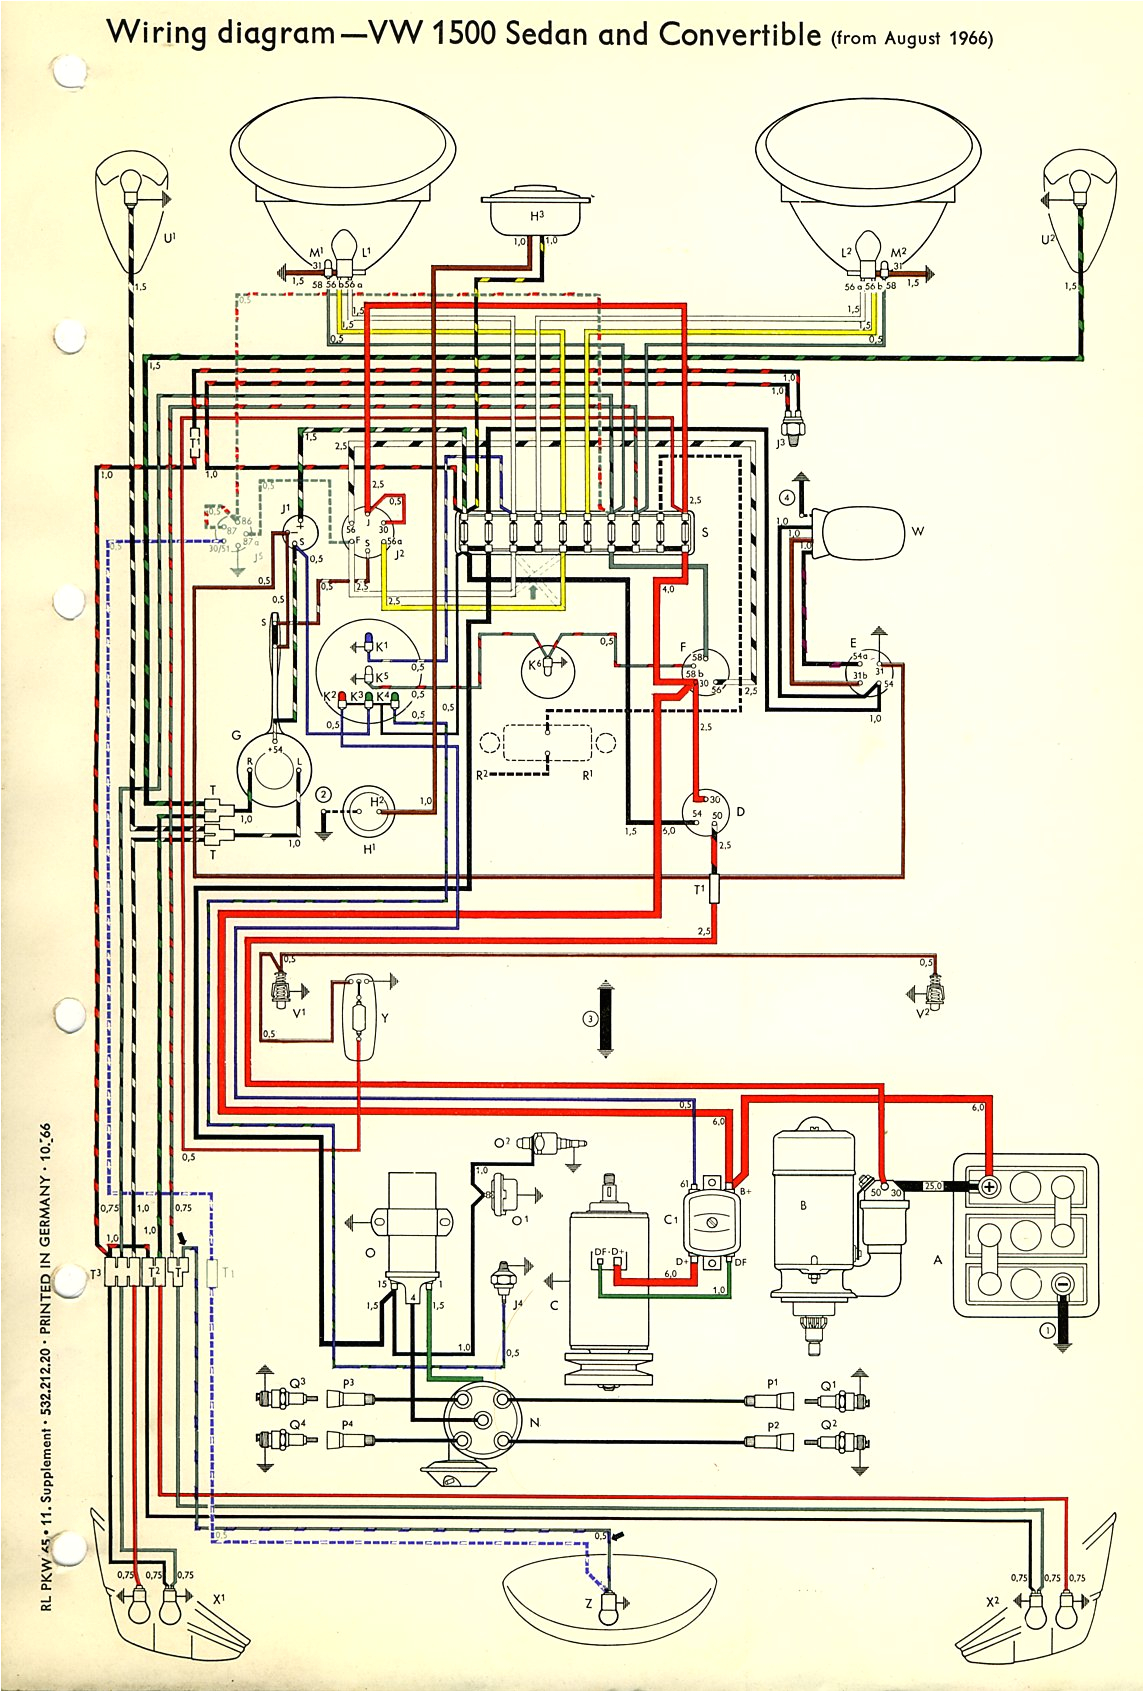 1973 volkswagen wiring diagram book diagram schema volkswagen wiring diagram 1973 vw beetle